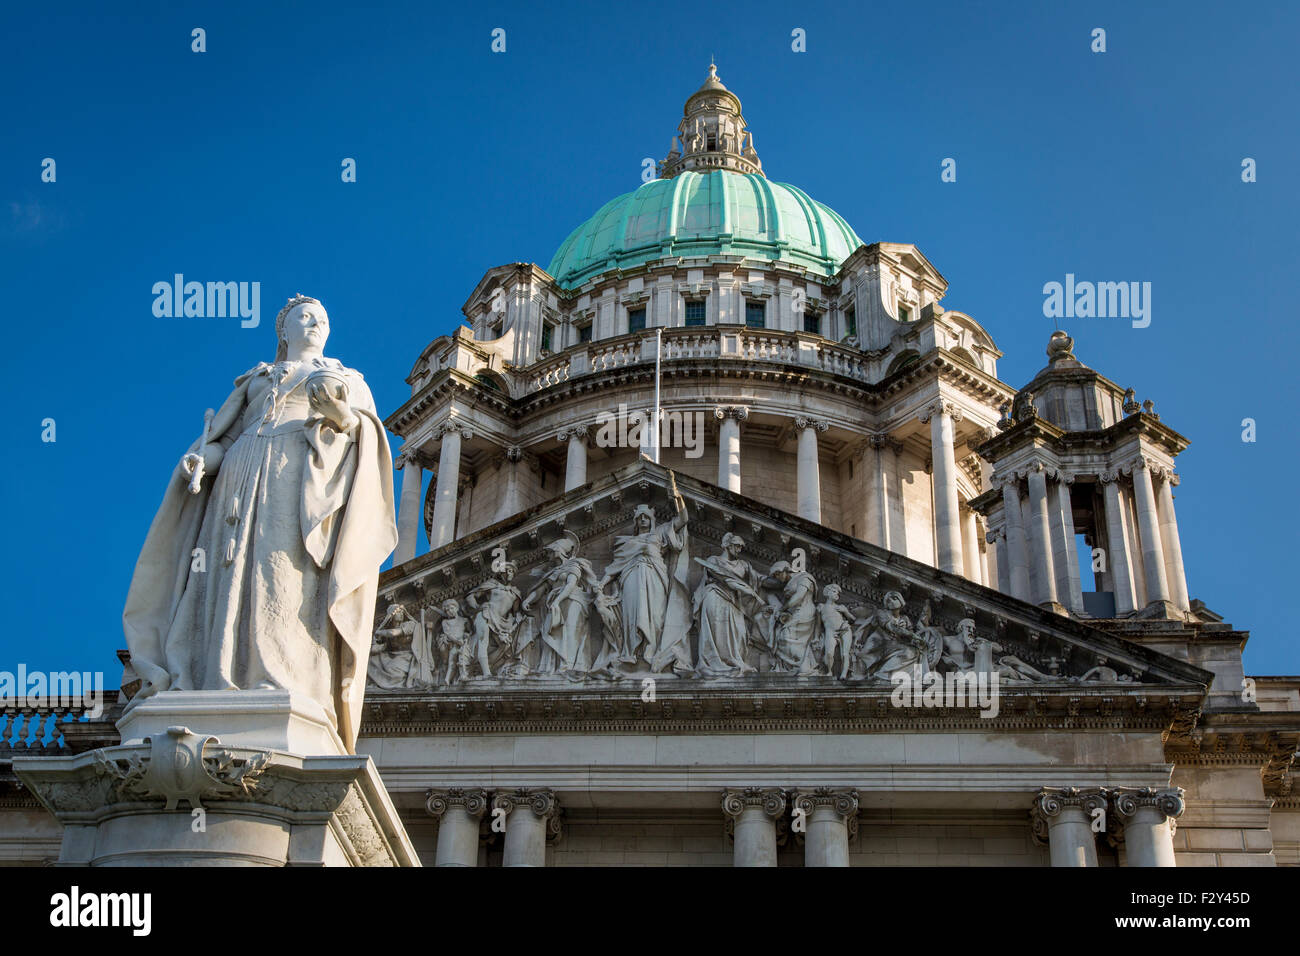 Queen Victoria Statue below Belfast City Hall Building, Belfast, Northern Ireland, UK Stock Photo